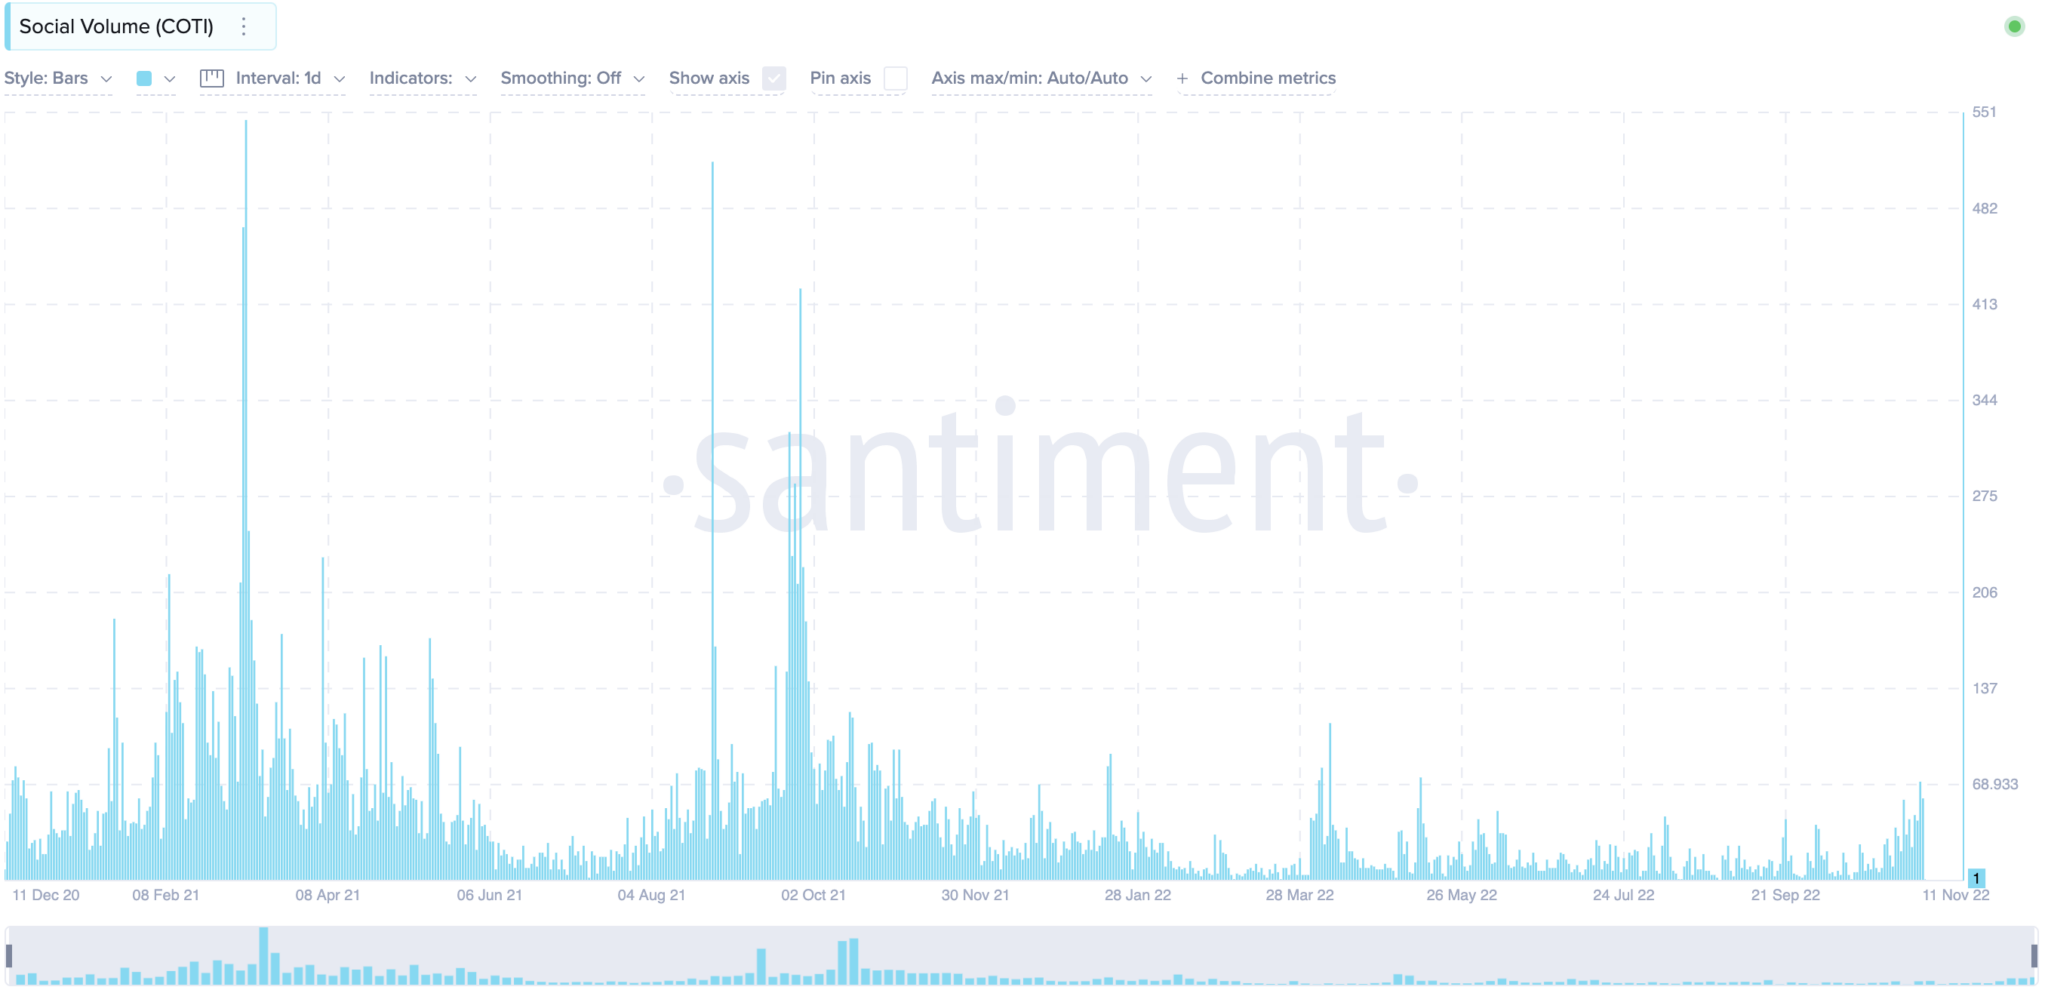 Dự đoán giá COTI thông qua các chỉ số mạng xã hội theo Santiment